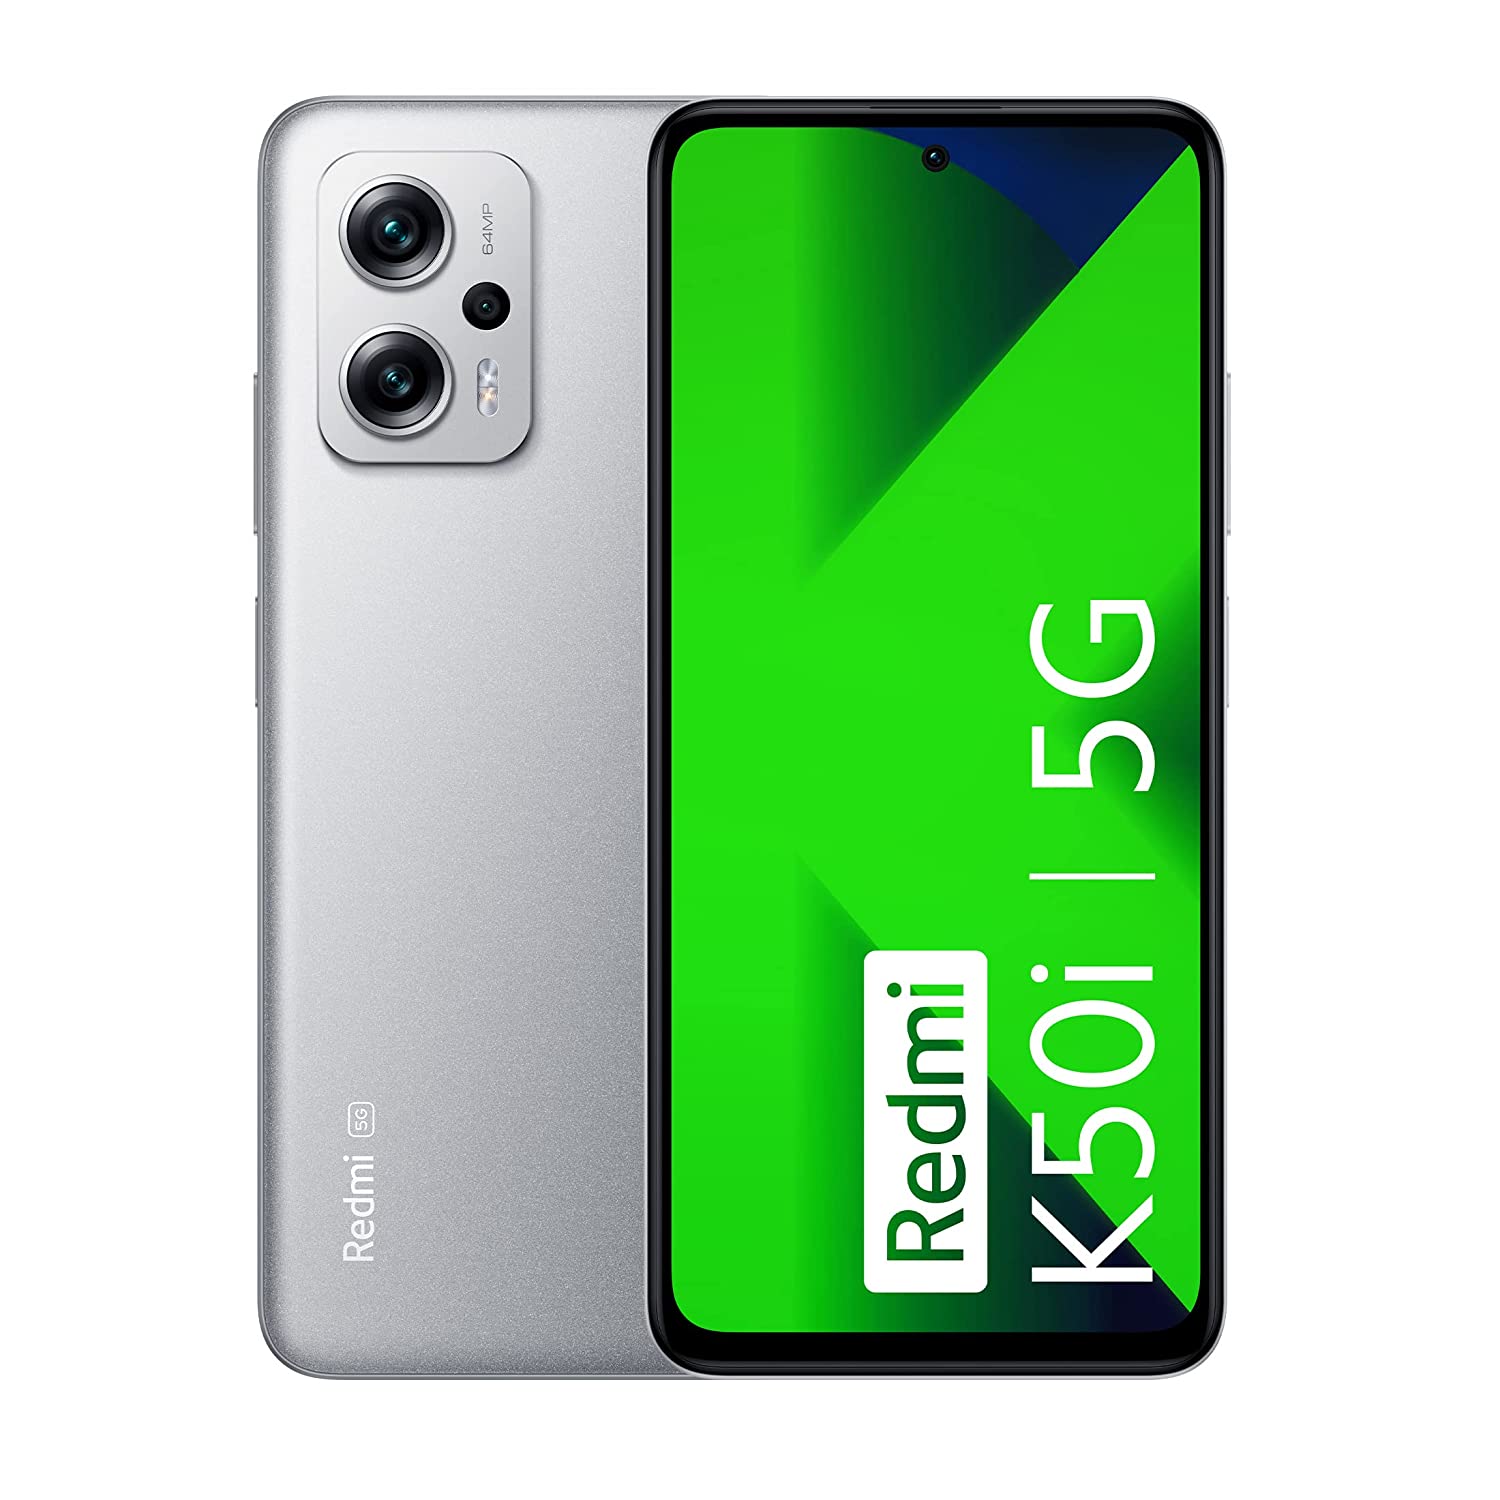 कैमरे और गेमिंग के लिये बेस्ट है ये Redmi का न्यू लॉन्च फोन, Amazon Sale में खरीदें बंपर डिस्काउंट पर